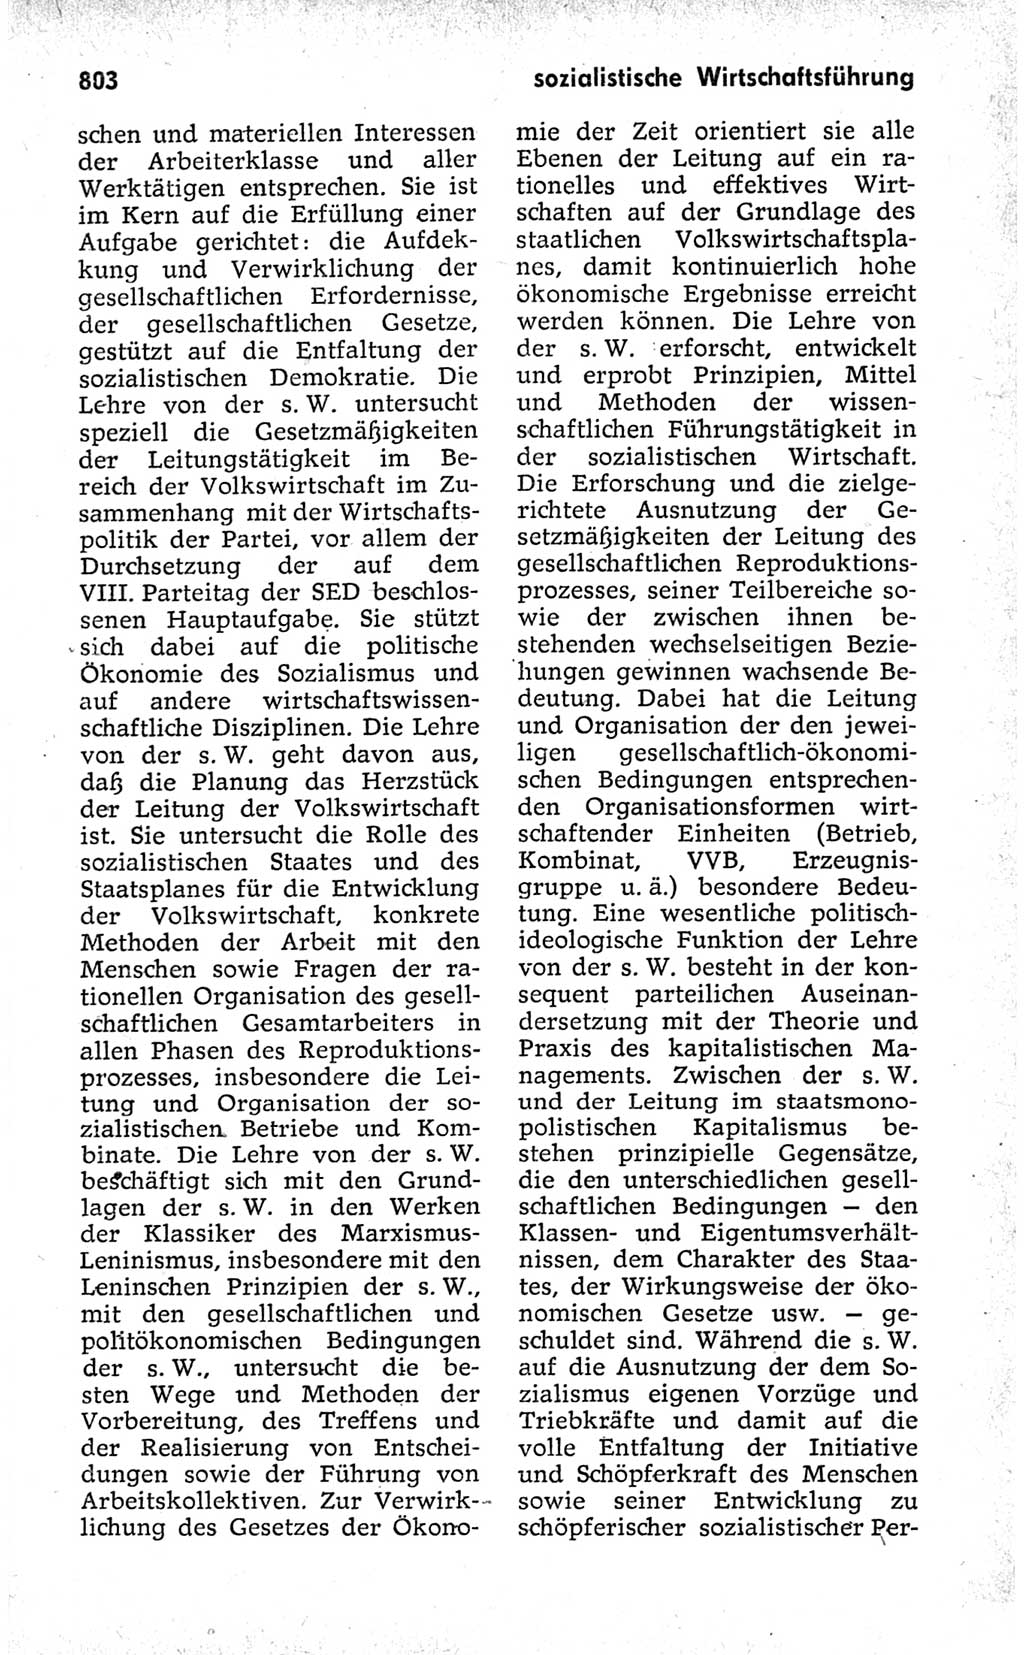 Kleines politisches Wörterbuch [Deutsche Demokratische Republik (DDR)] 1973, Seite 803 (Kl. pol. Wb. DDR 1973, S. 803)